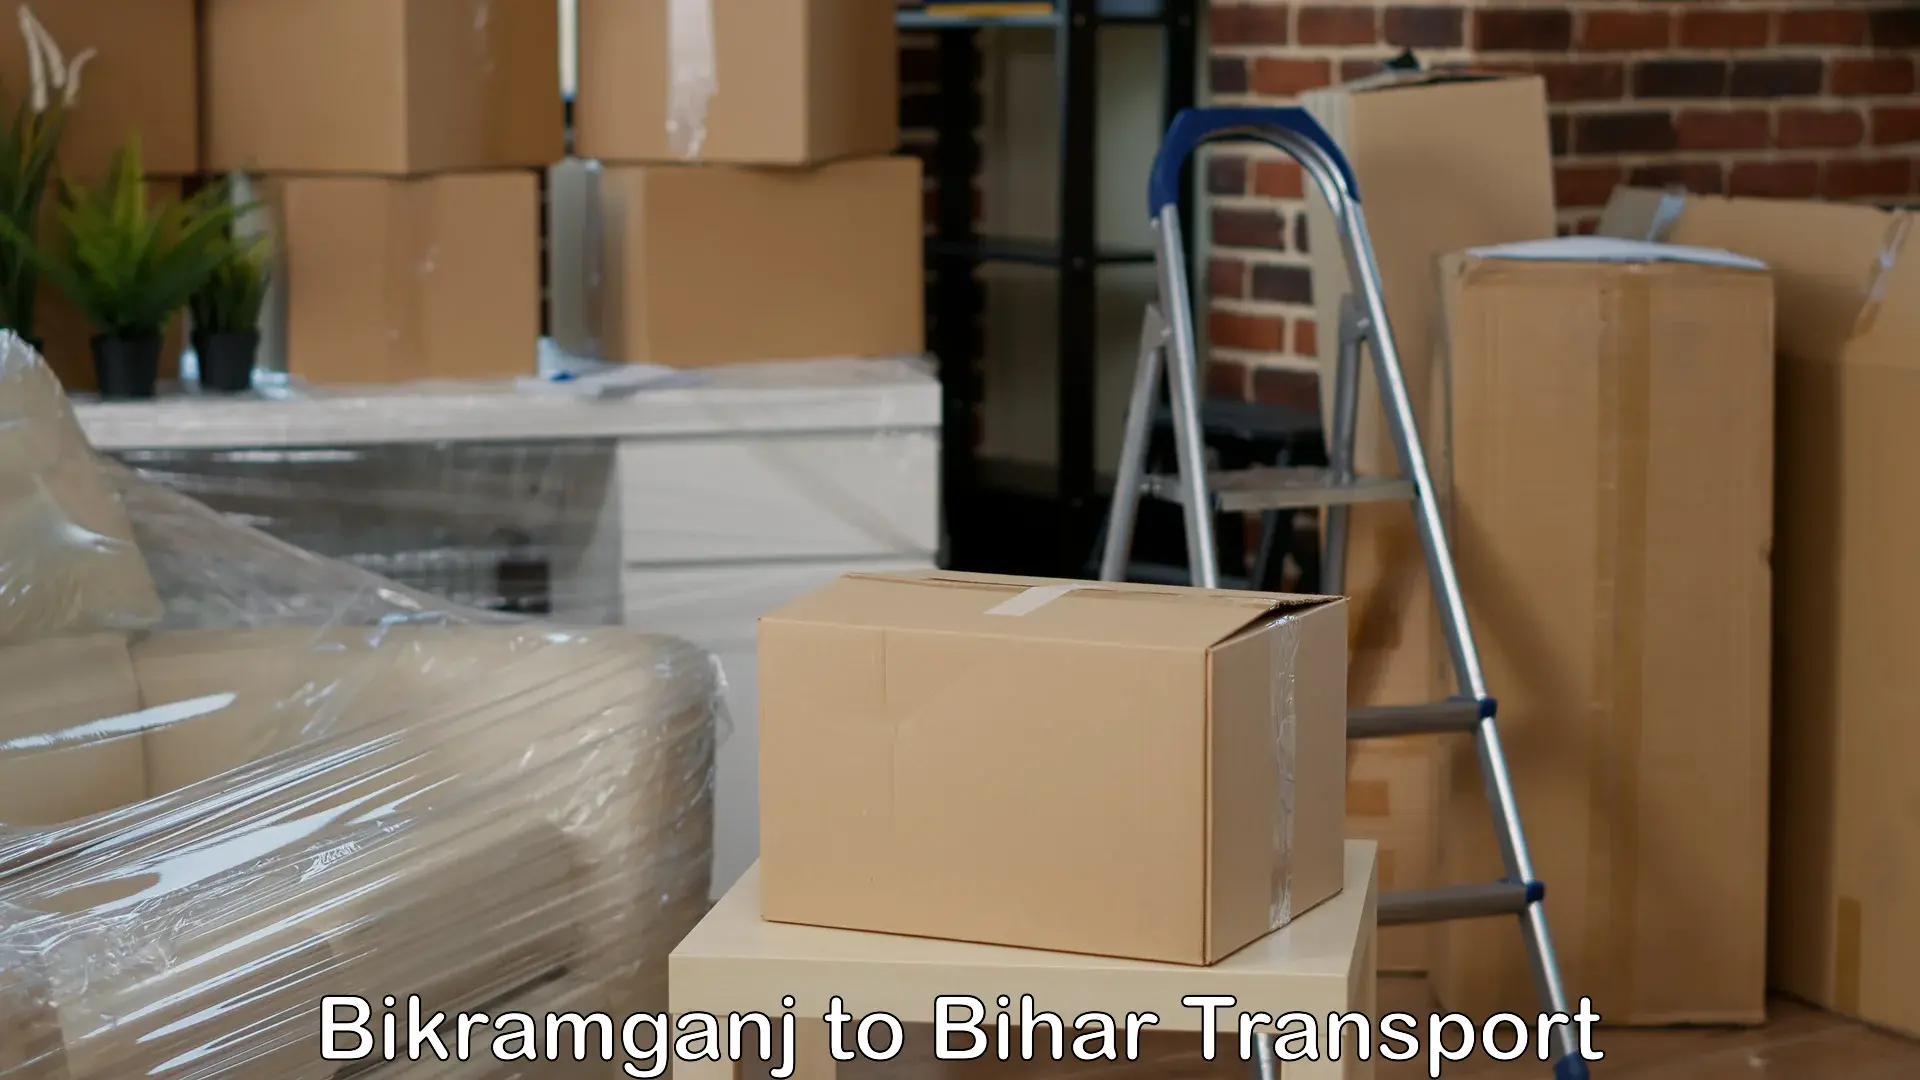 Luggage transport services Bikramganj to Madhepura